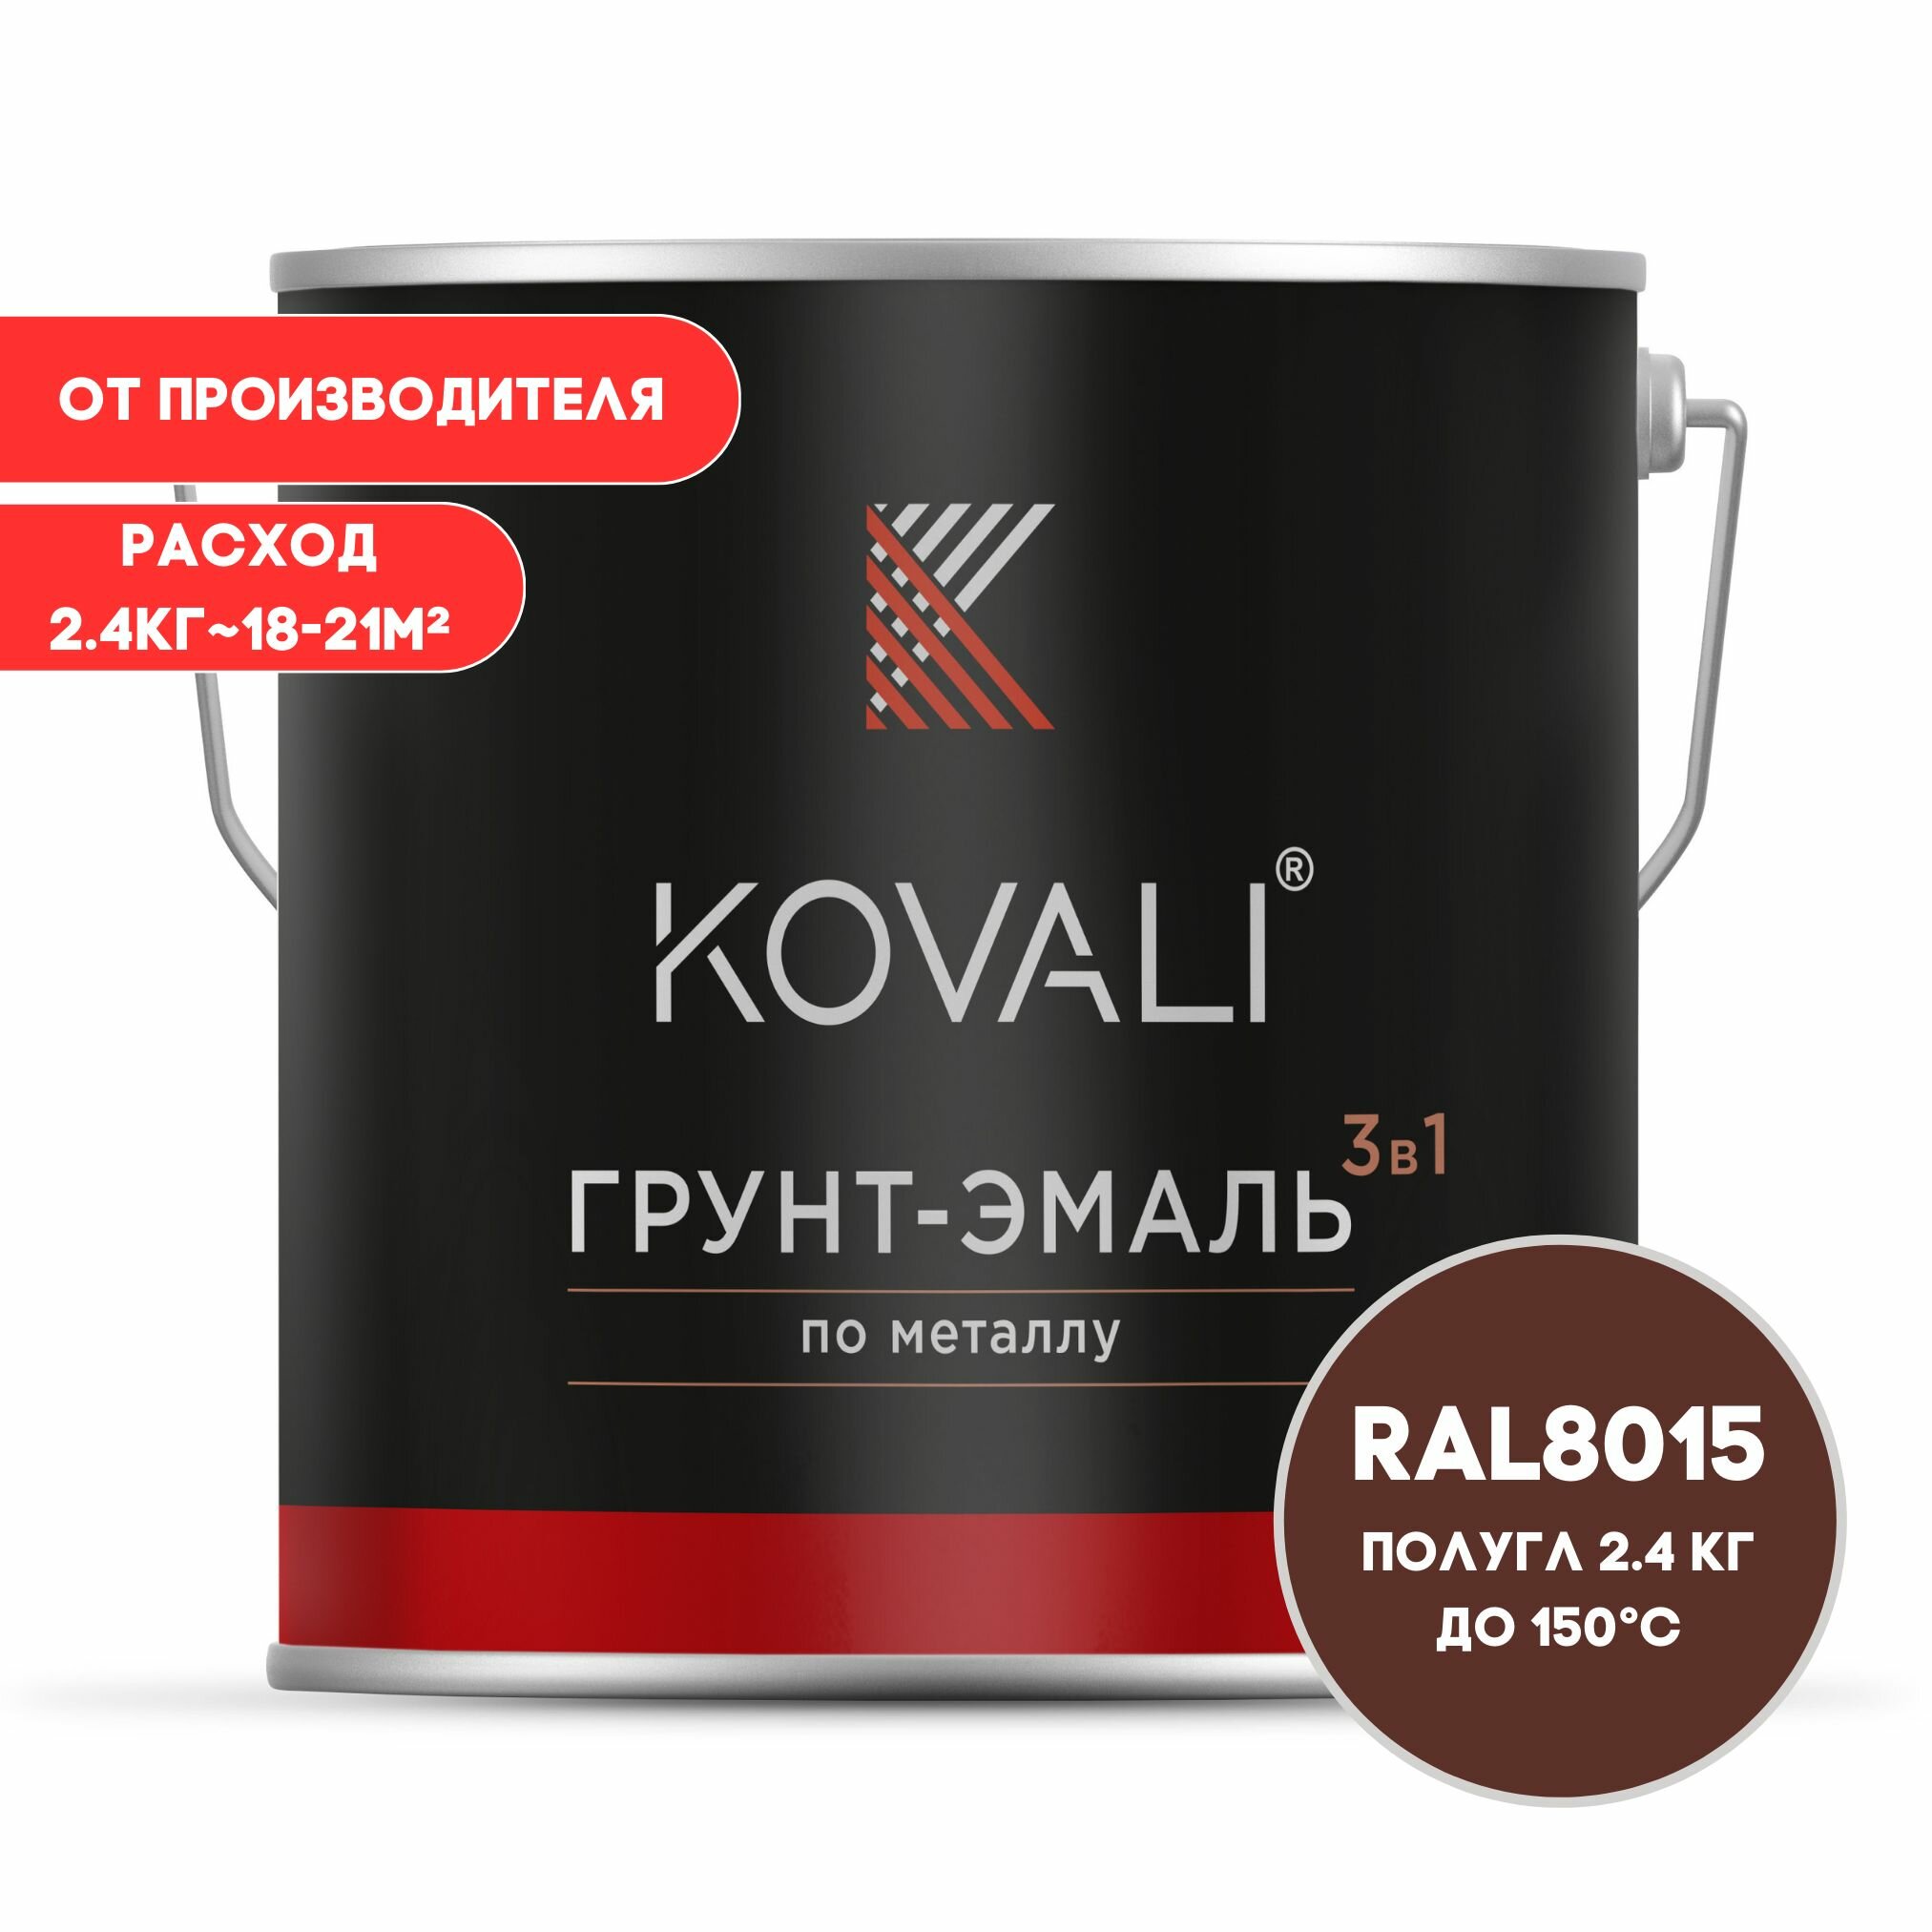 Грунт-эмаль 3 в 1 KOVALI пг Каштаново-коричневый RAL 8015 2.4 кг краска по металлу по ржавчине быстросохнущая